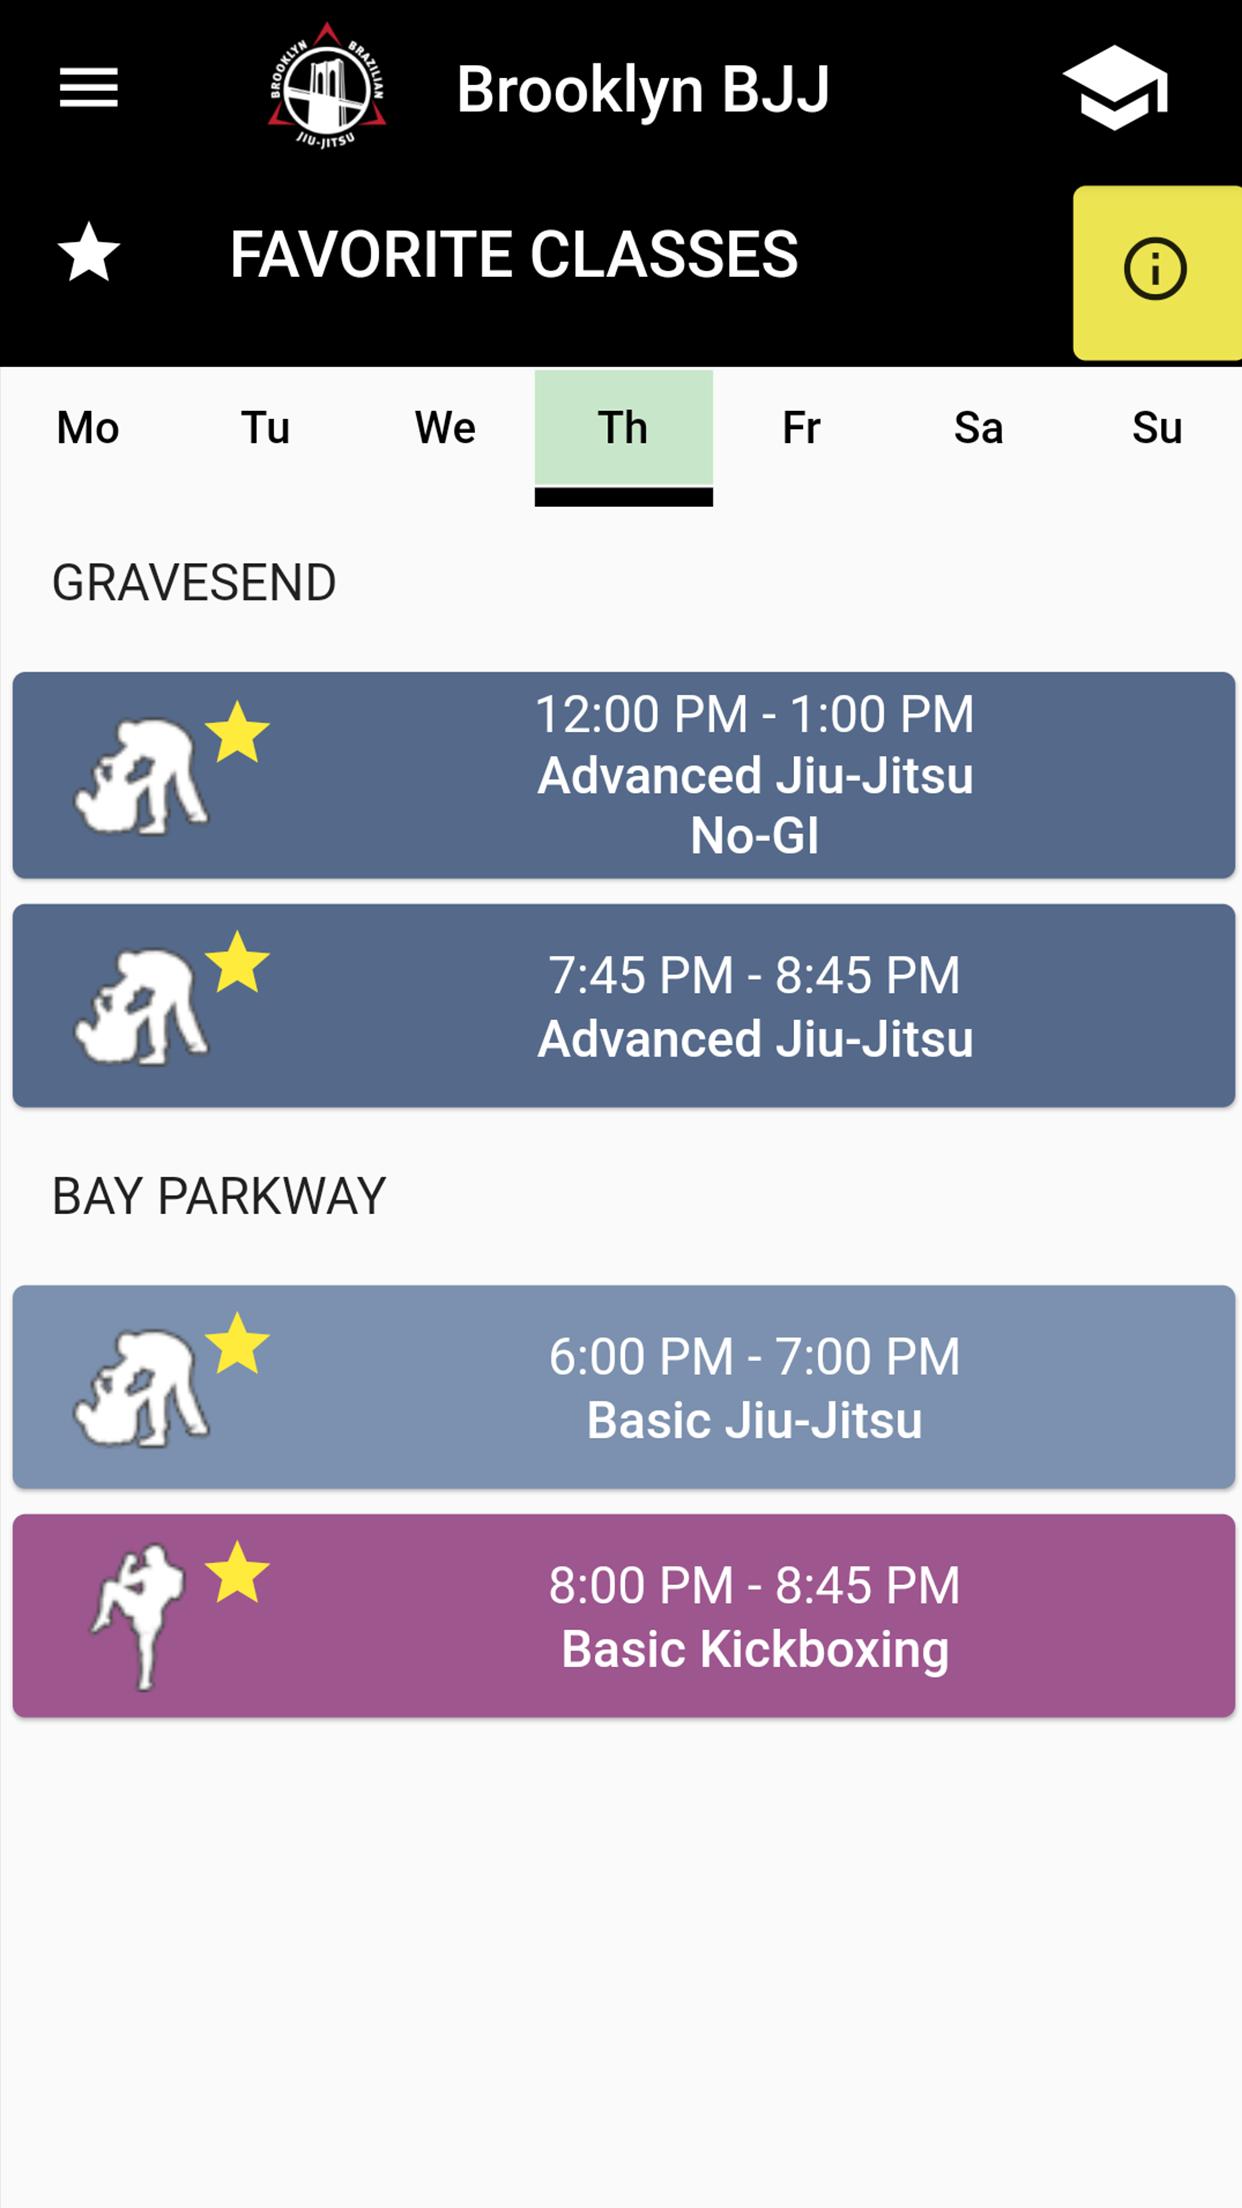 Brooklyn Brazilian Jiu Jitsu Bbjj Gdsk For Android Apk Download - bb jj roblox